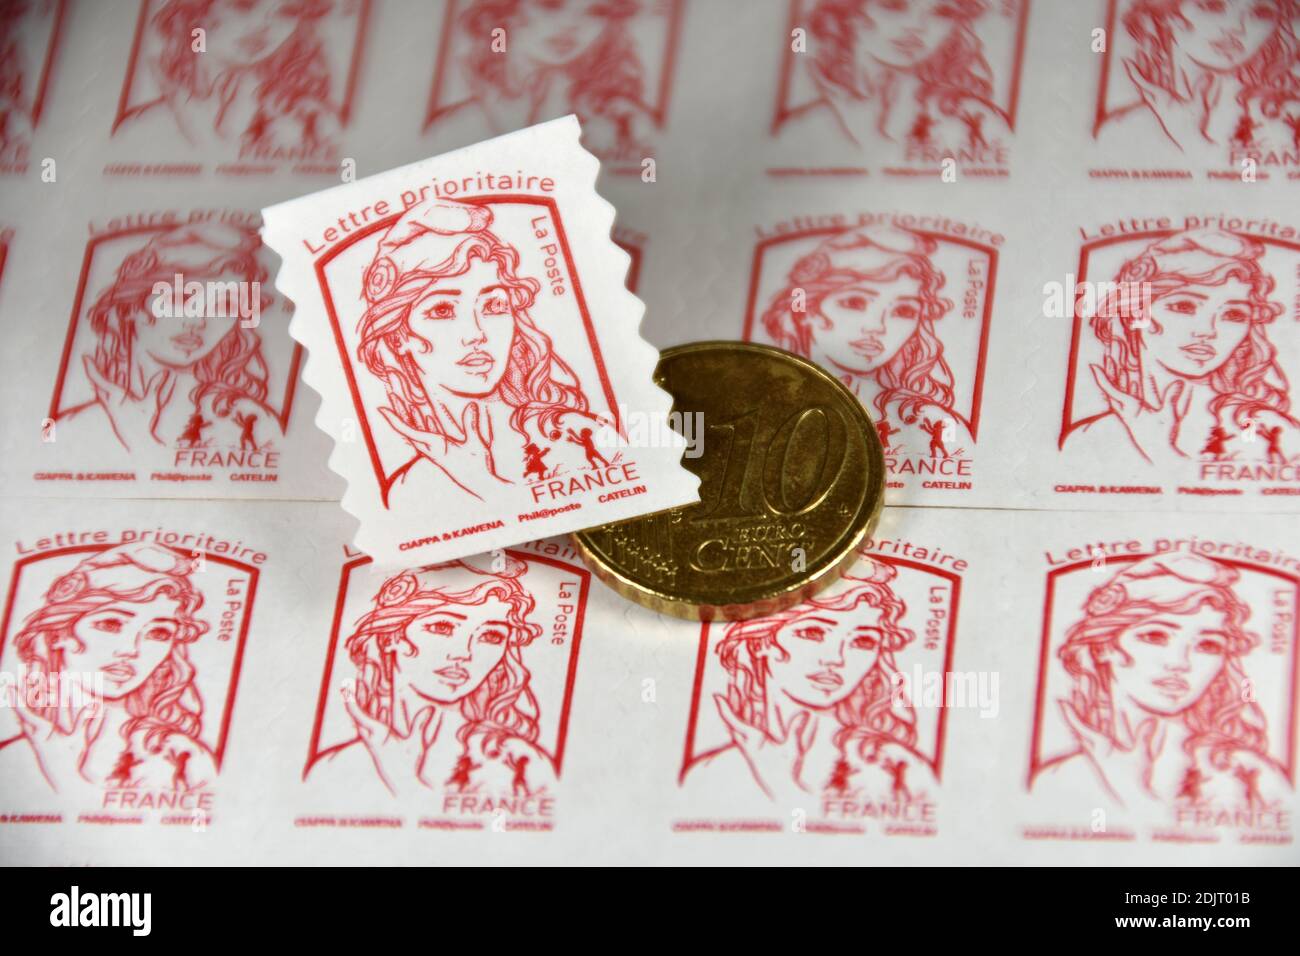 Sur cette photo, un cachet de poste et une pièce de 10 centimes d'euro sont exposés. Le groupe la poste a annoncé que le prix des timbres augmentera en moyenne de 4.7% à compter du 1er janvier 2021. Banque D'Images